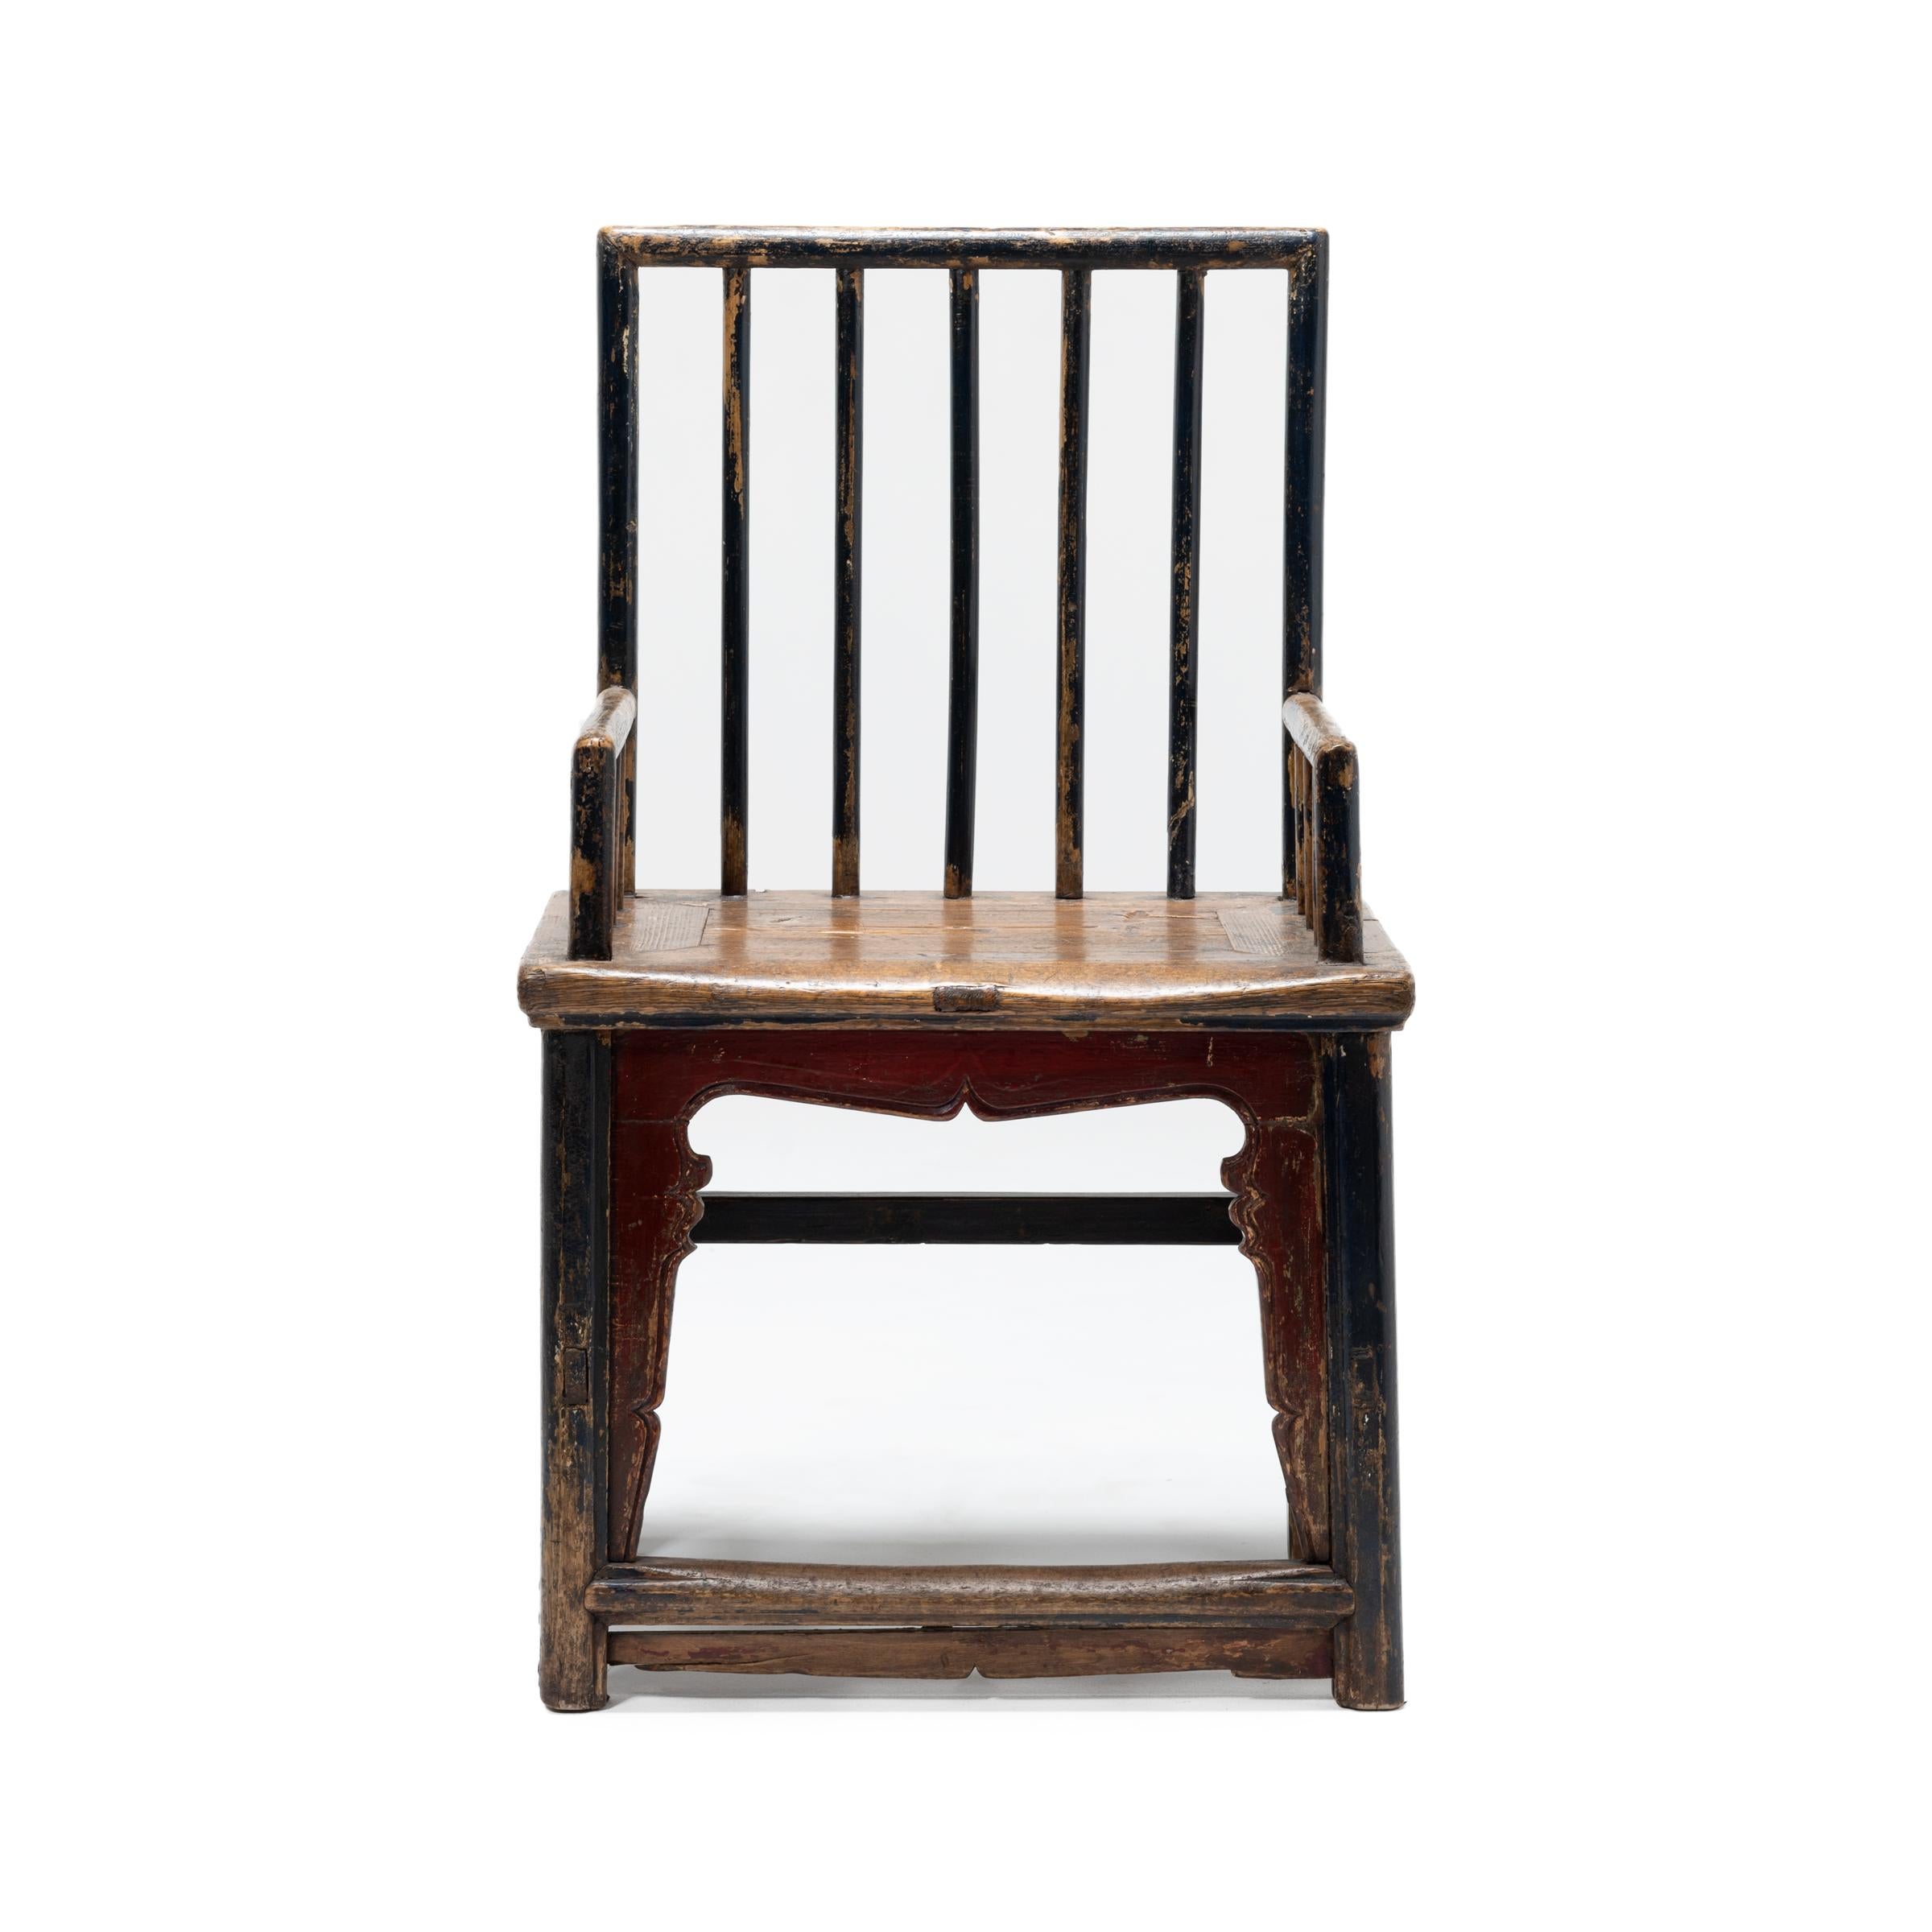 Dieser kuriose Stuhl mit Spindellehne aus dem 19. Jahrhundert widersetzt sich den traditionellen Formen der Qing-Dynastie. Der Stuhl ist eine Sammlung von Momenten aus früheren Epochen und enthält Elemente aus dem chinesischen Tischlerhandwerk, das